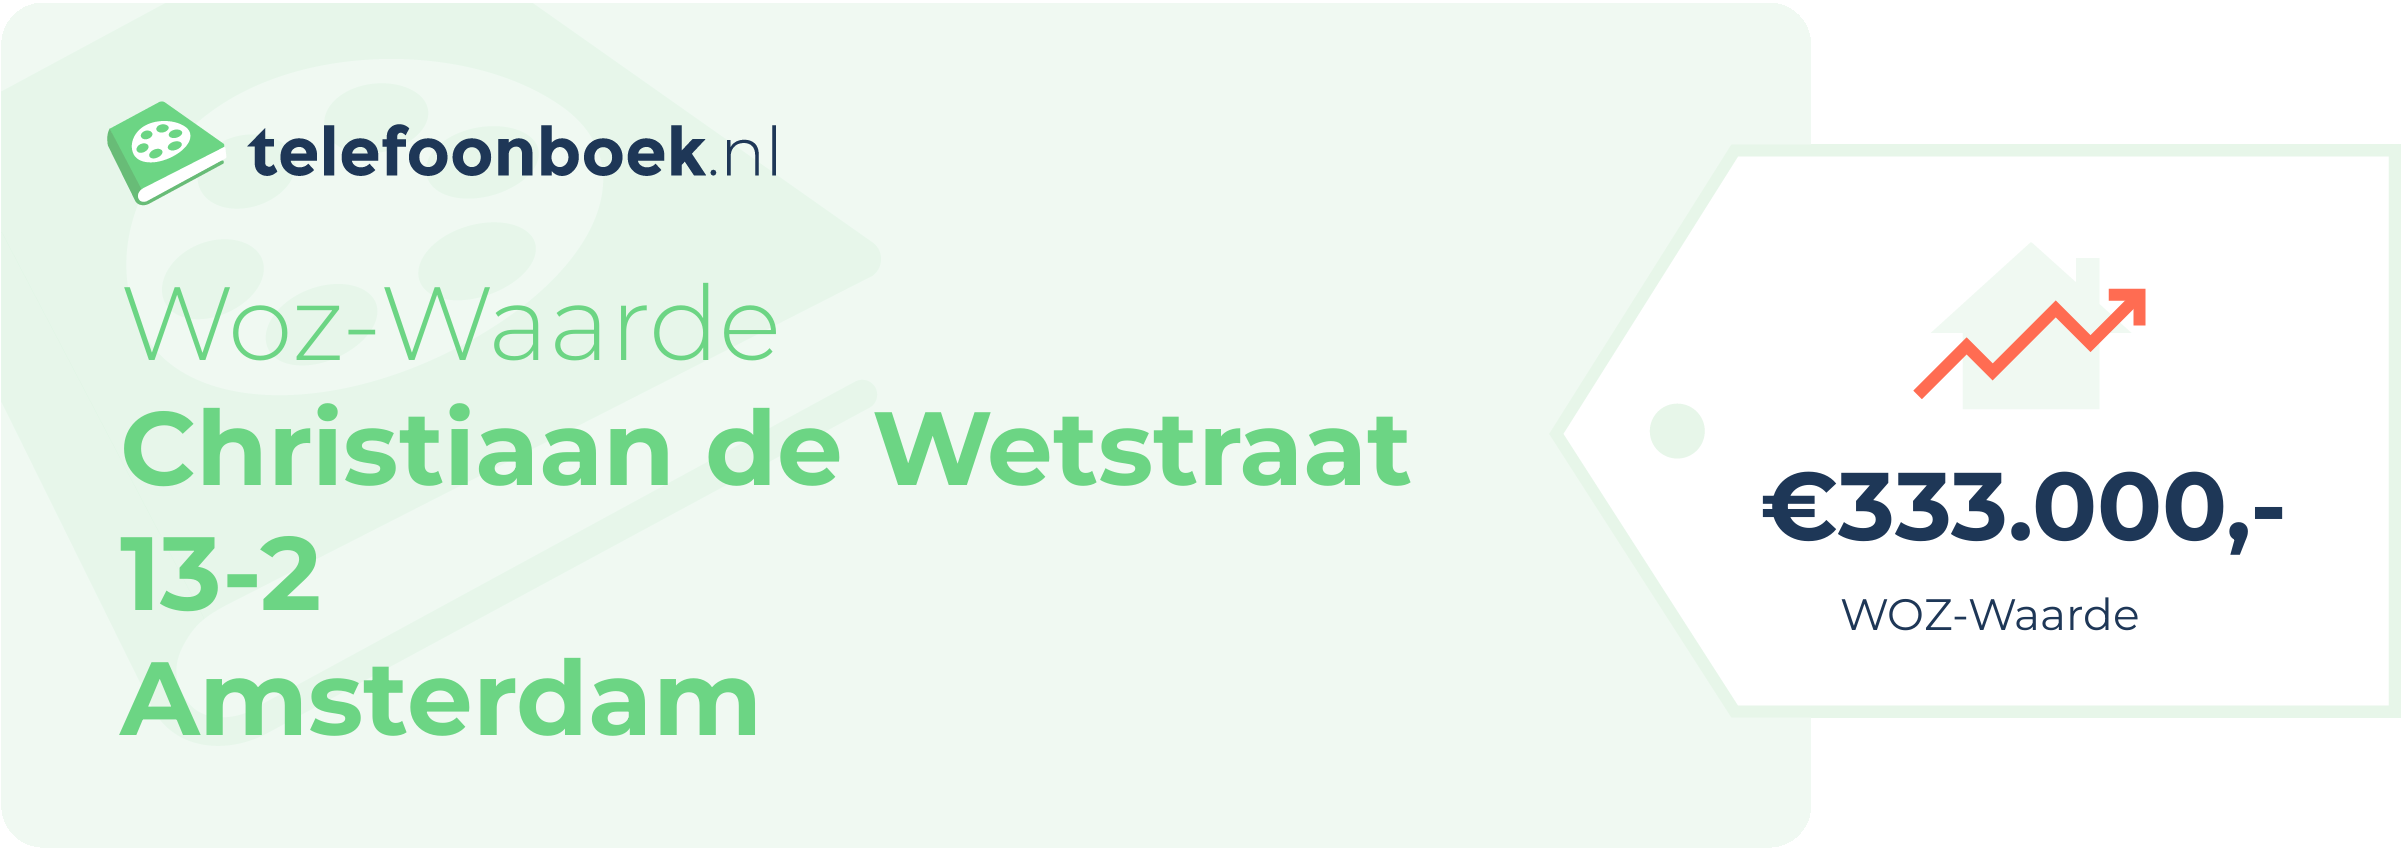 WOZ-waarde Christiaan De Wetstraat 13-2 Amsterdam